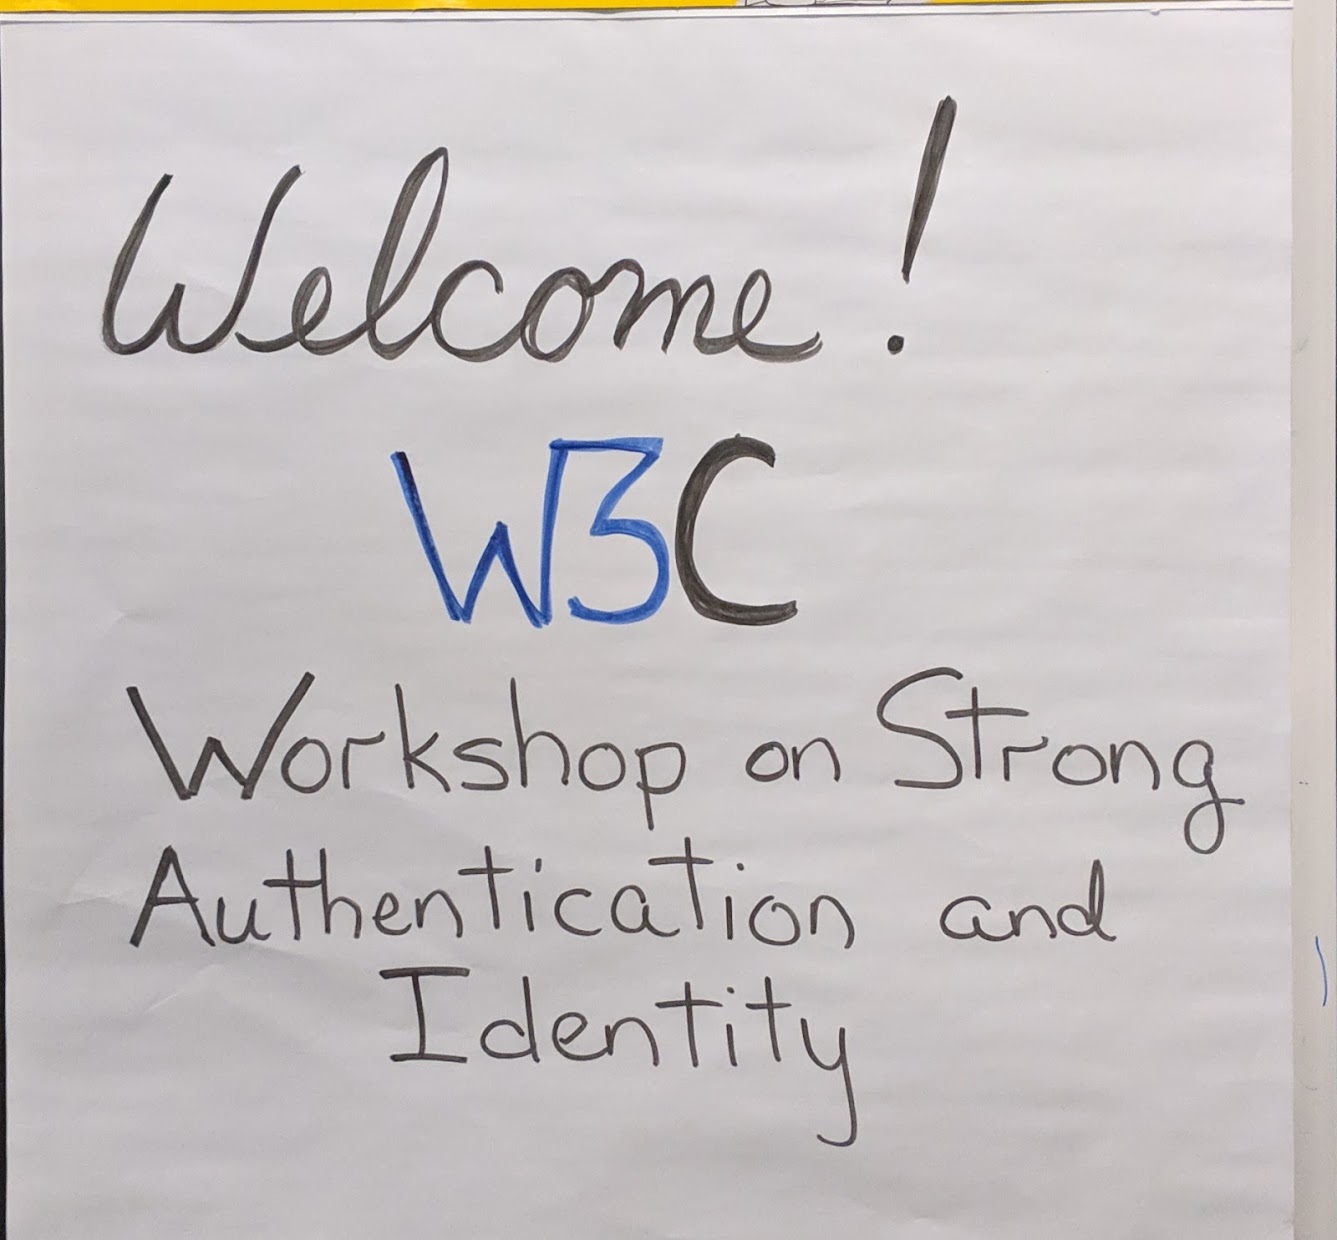 W3C опубликовал сегодня   доклад   из   W3C Workshop по строгой аутентификации и идентификации   состоялась 10-11 декабря 2018 года в Редмонде, штат Вашингтон (США)